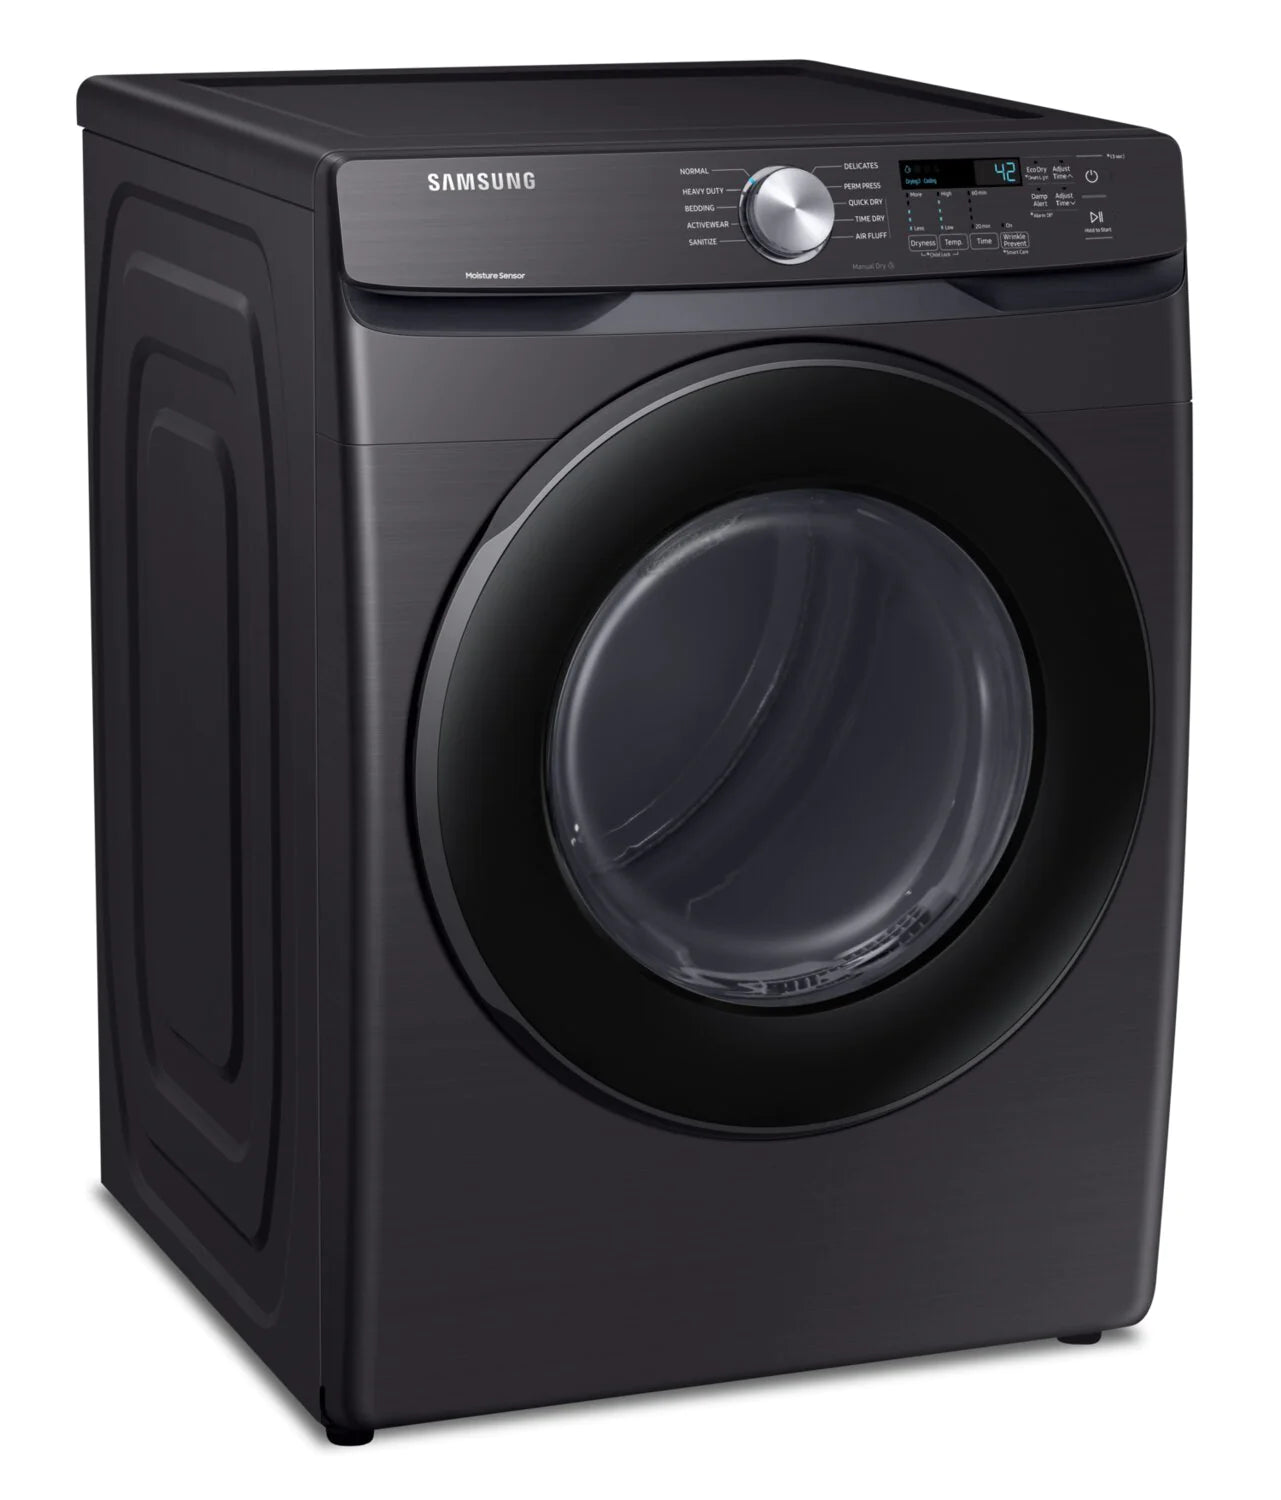 Samsung Dryer 27" Black Stainless Steel DVE45T6005V